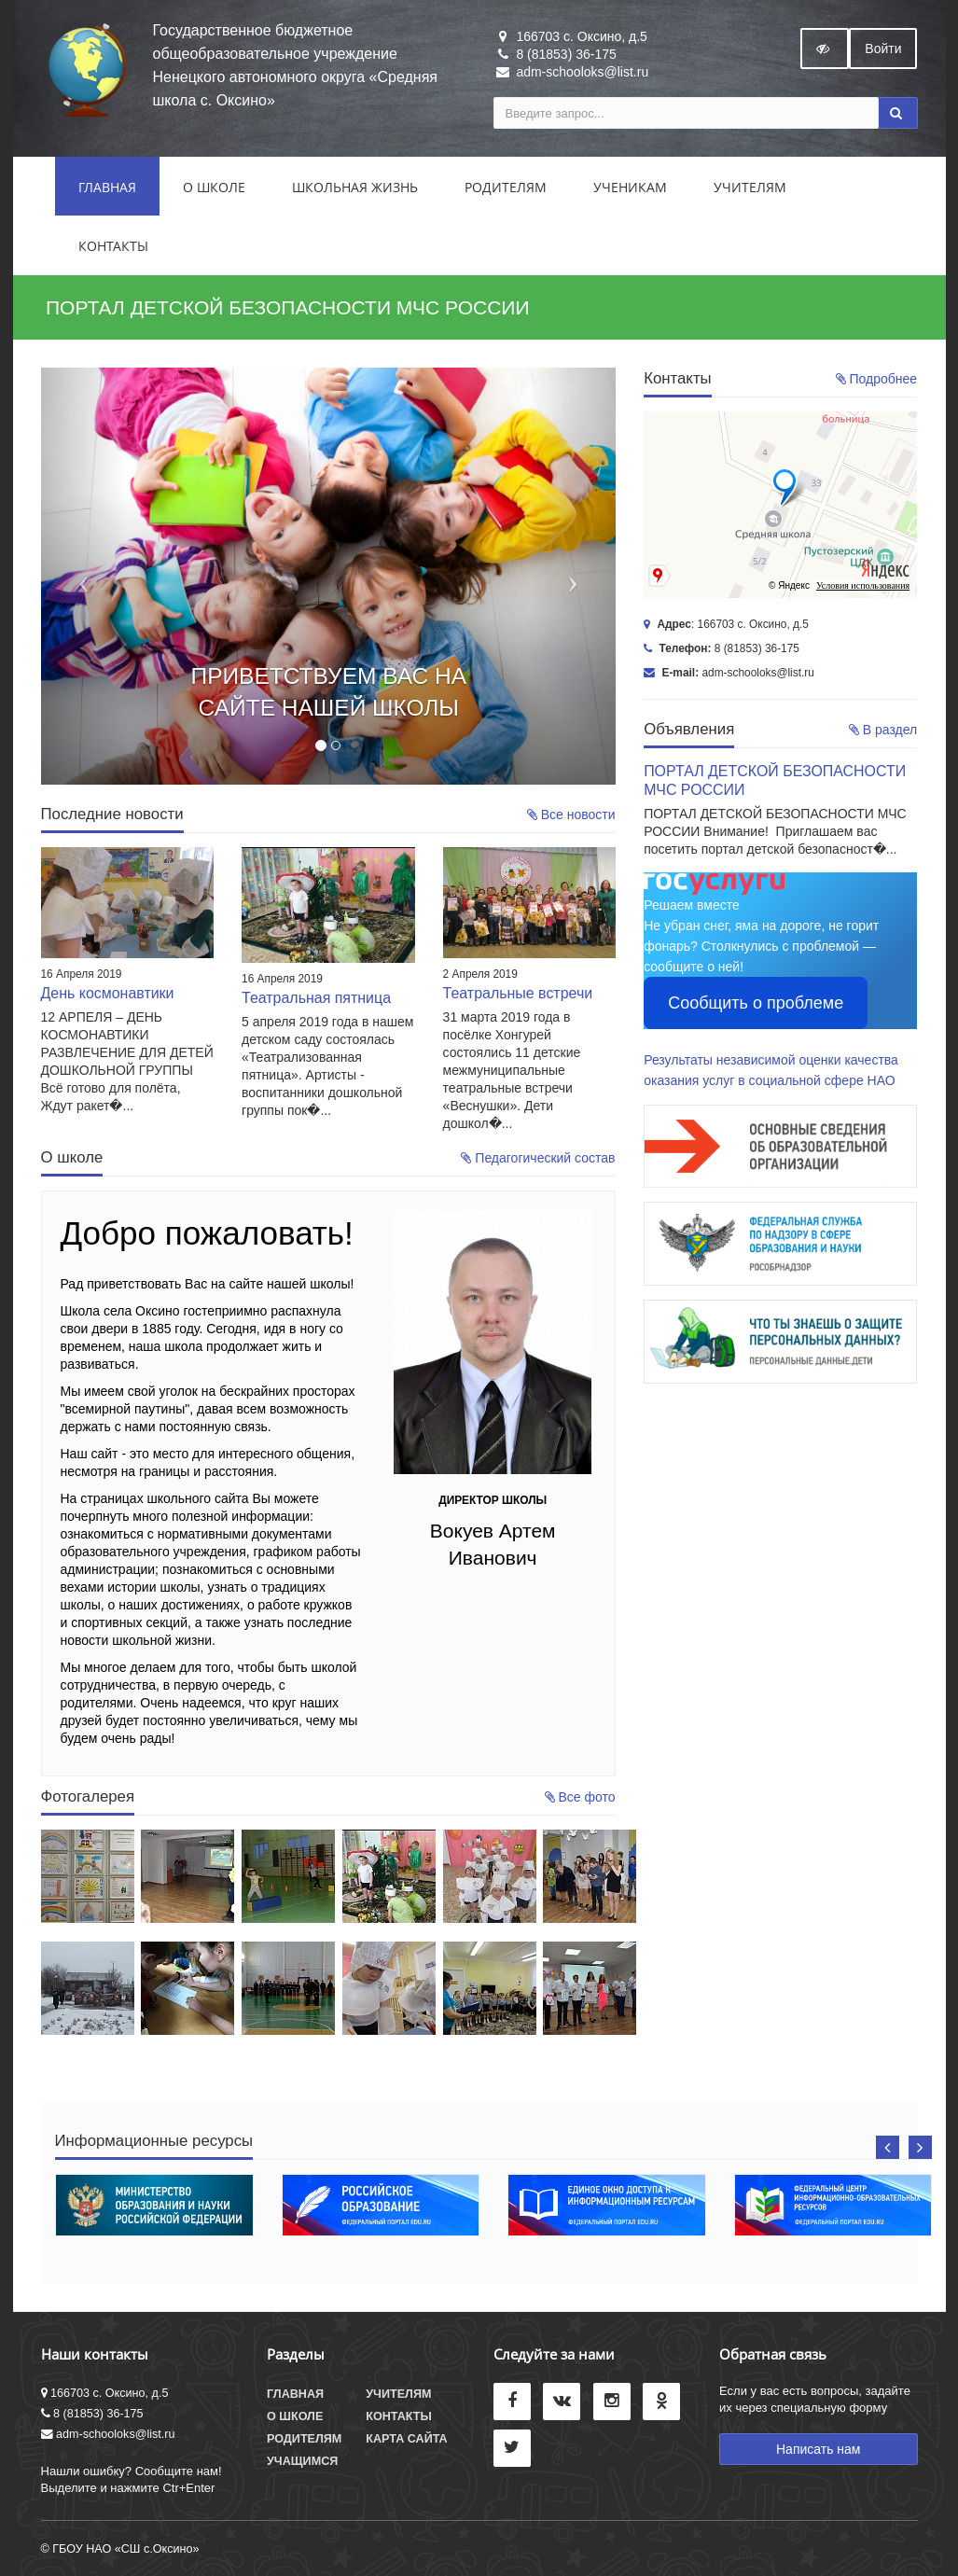 oksinoschool.ru